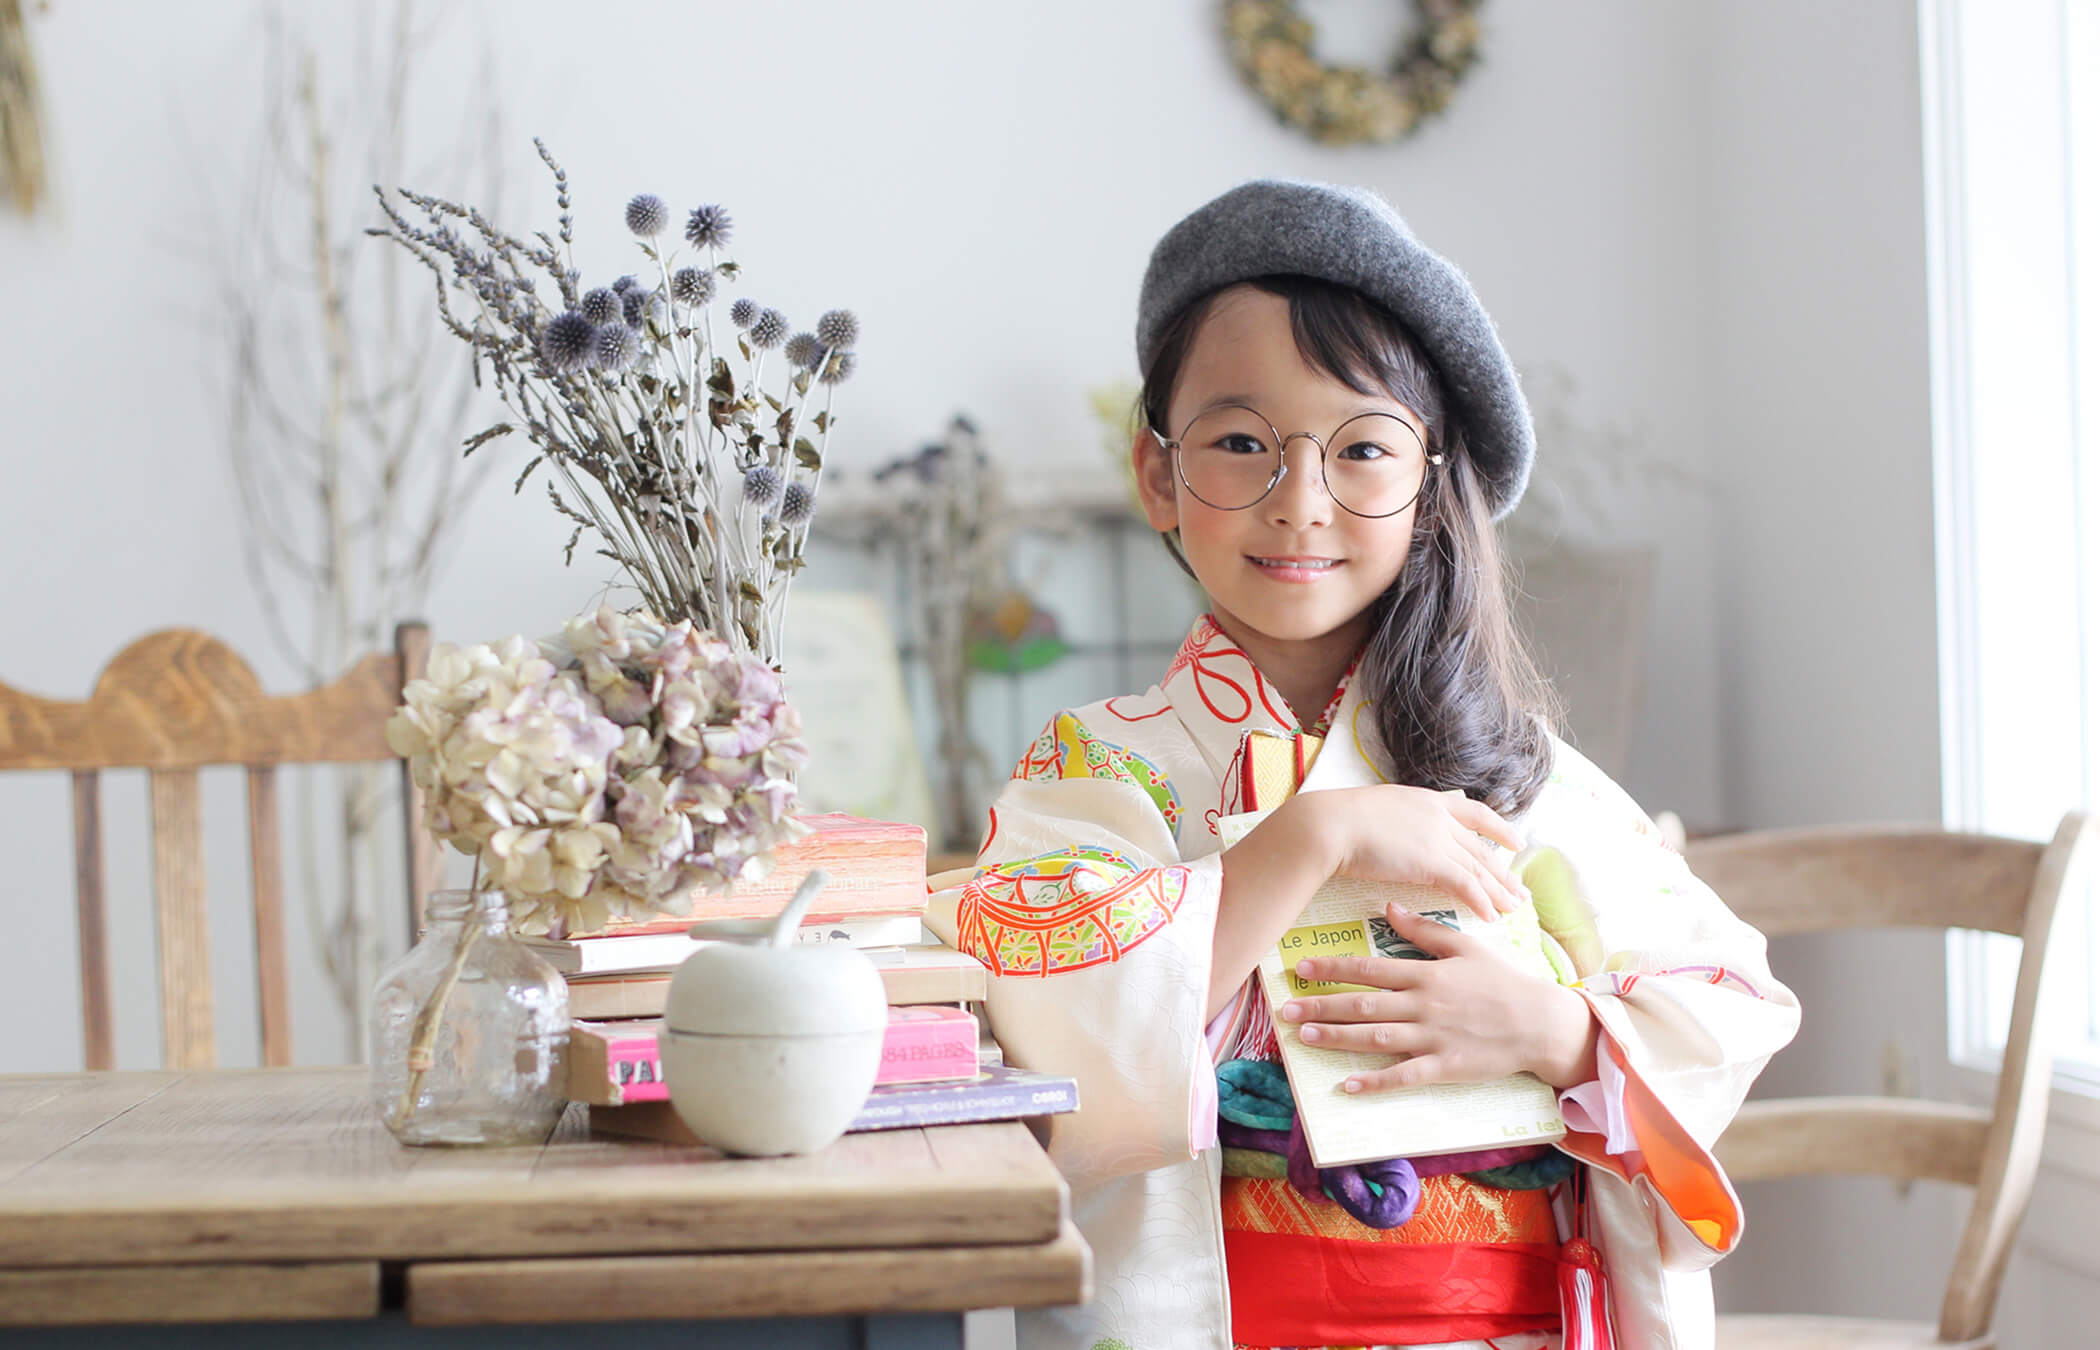 豊中市フォトスタジオピエノ:レトロ着物を着た女の子